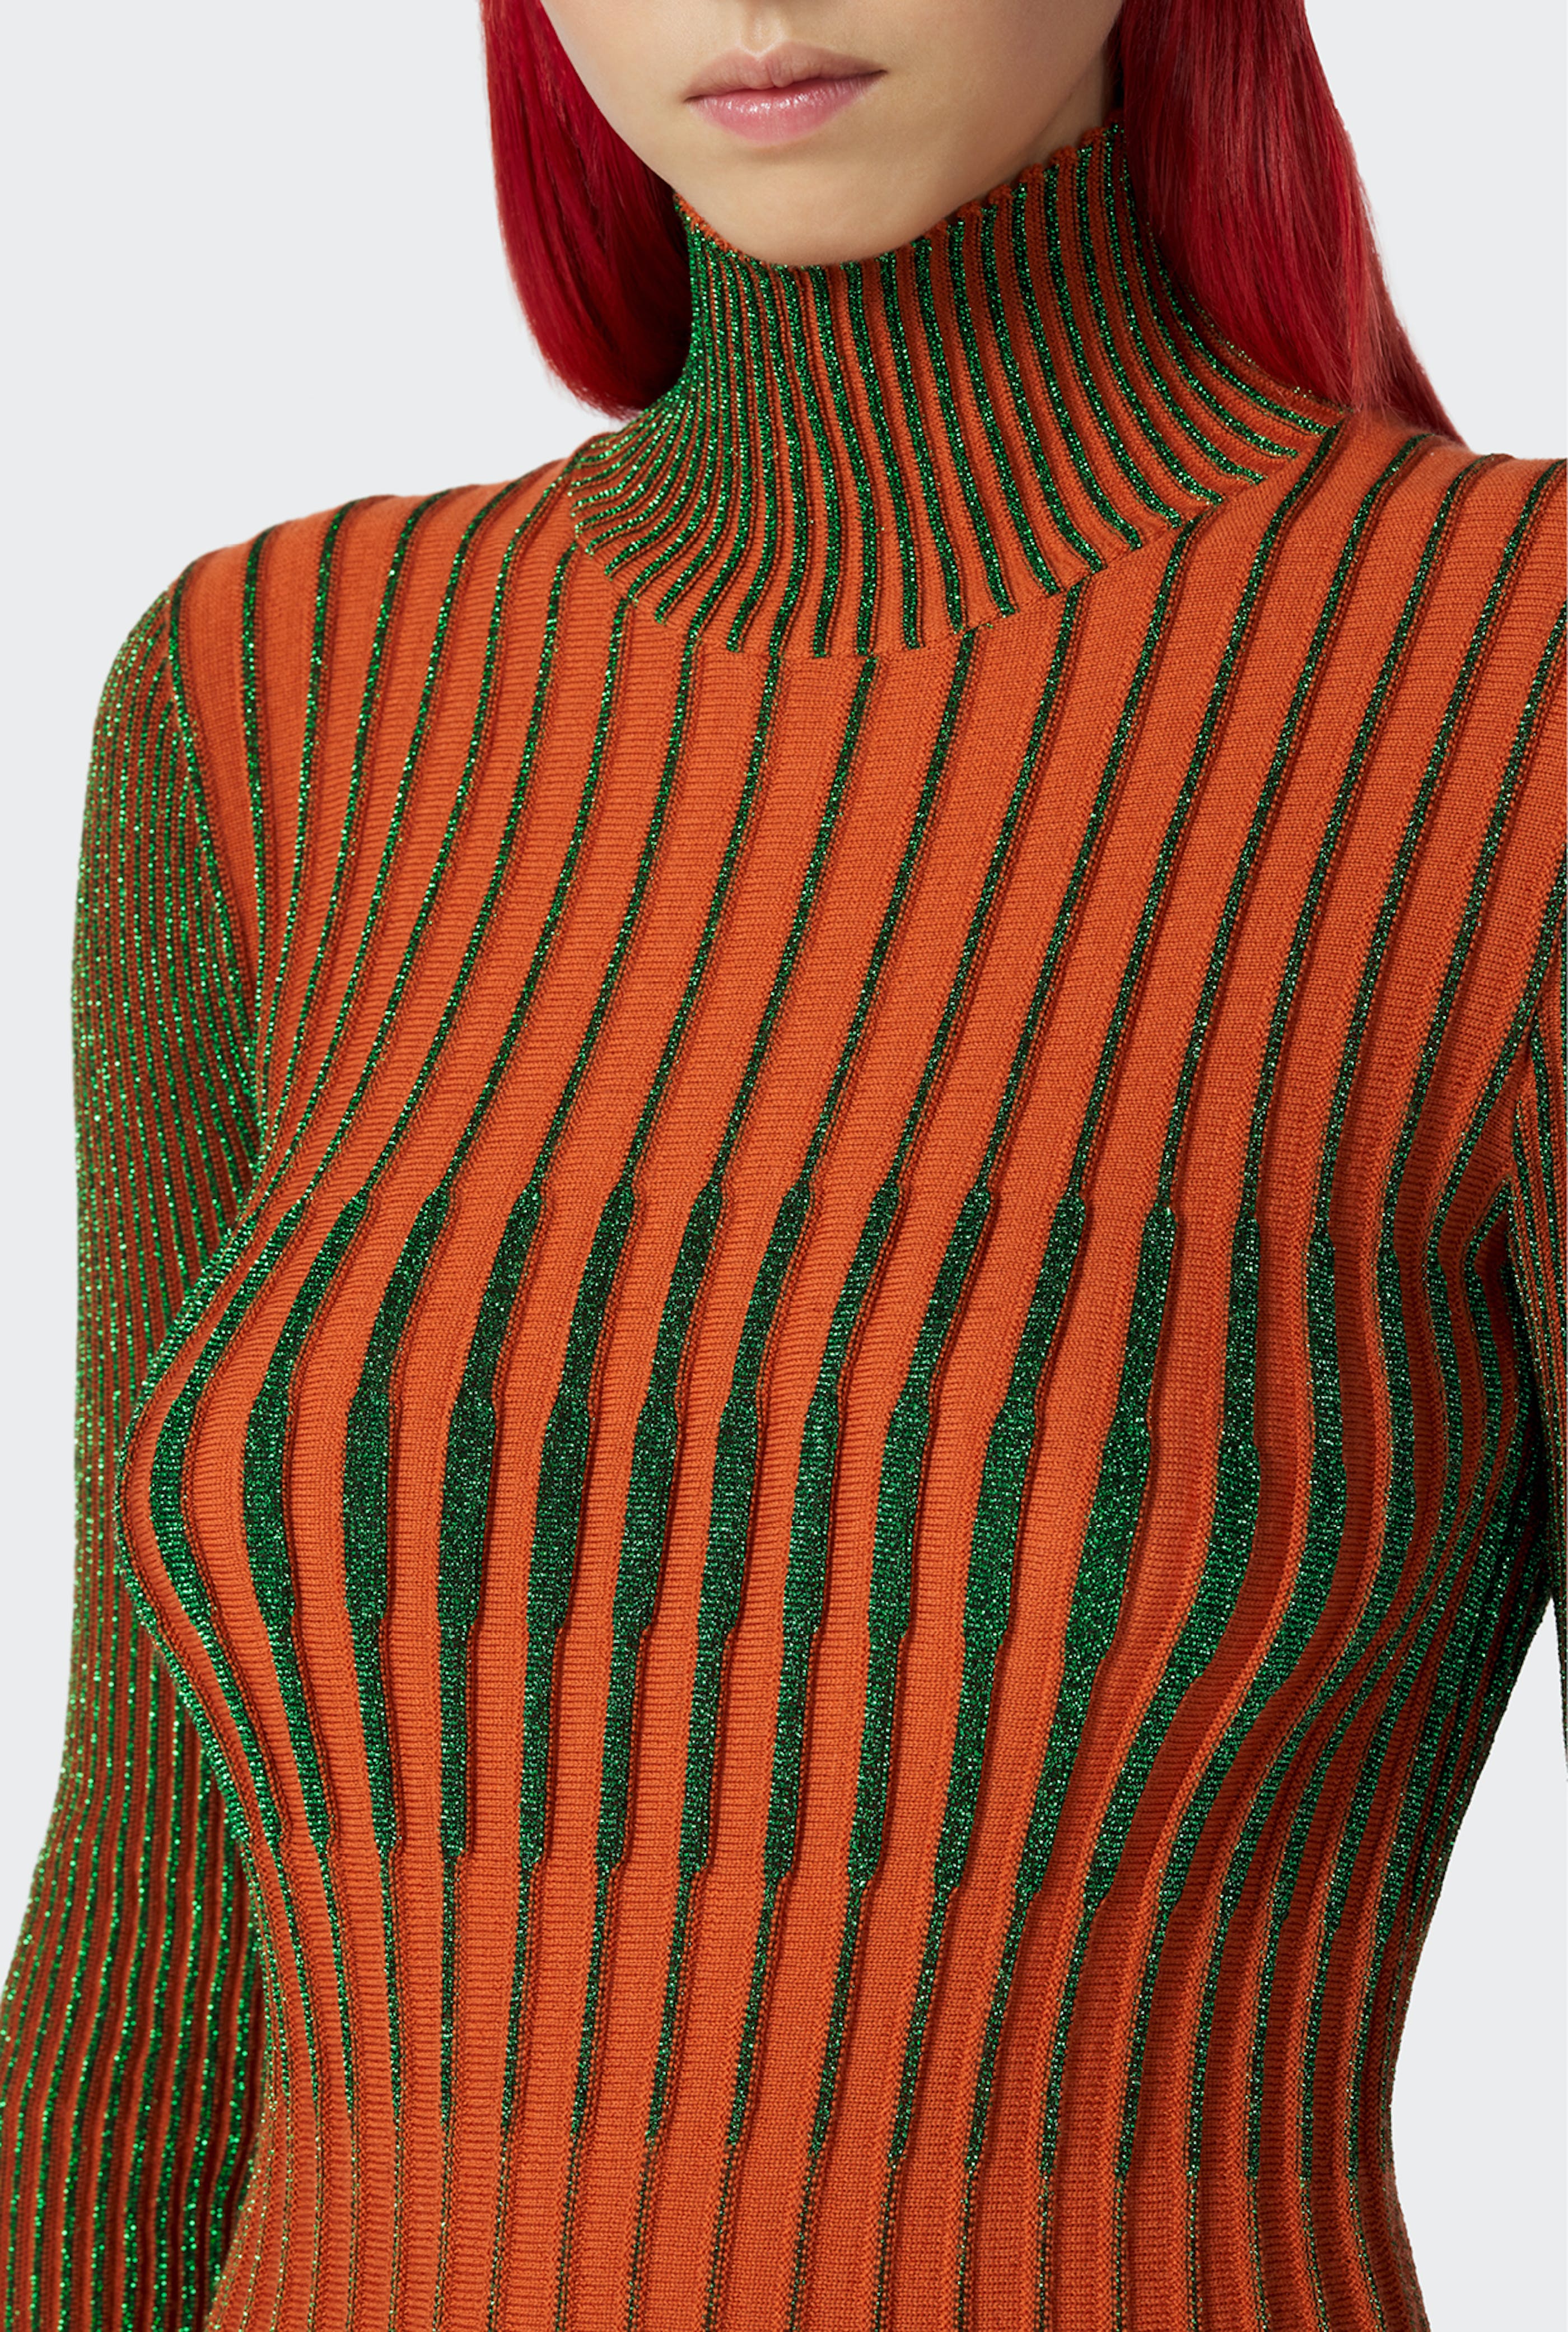 Jean Paul Gaultier - Jean Paul Gaultier | The Orange Cyber Knit Dress